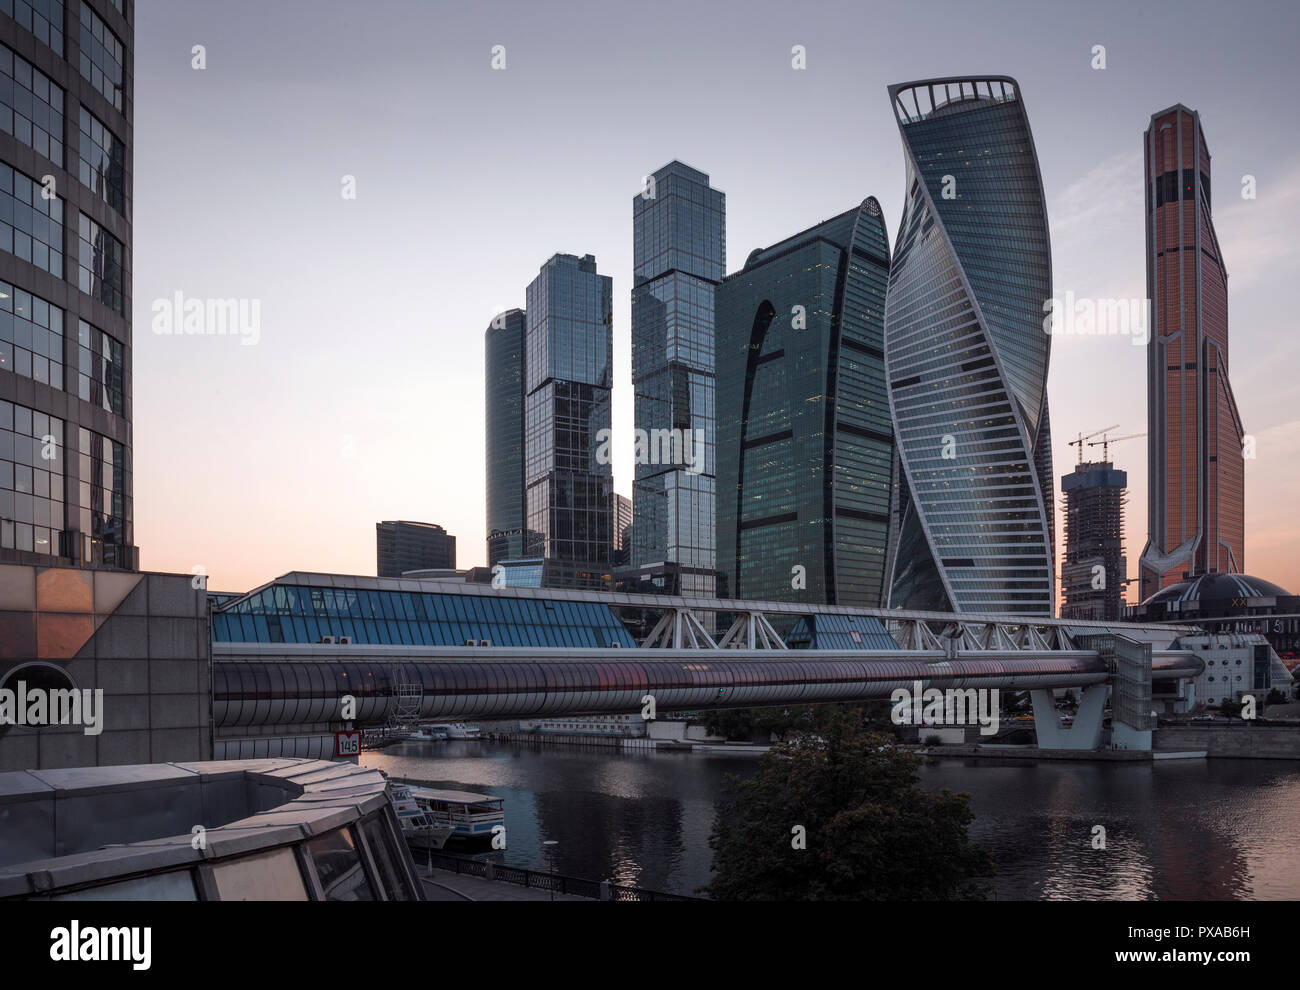 Centre de commerce international de la ville de Moscou, Russie Banque D'Images